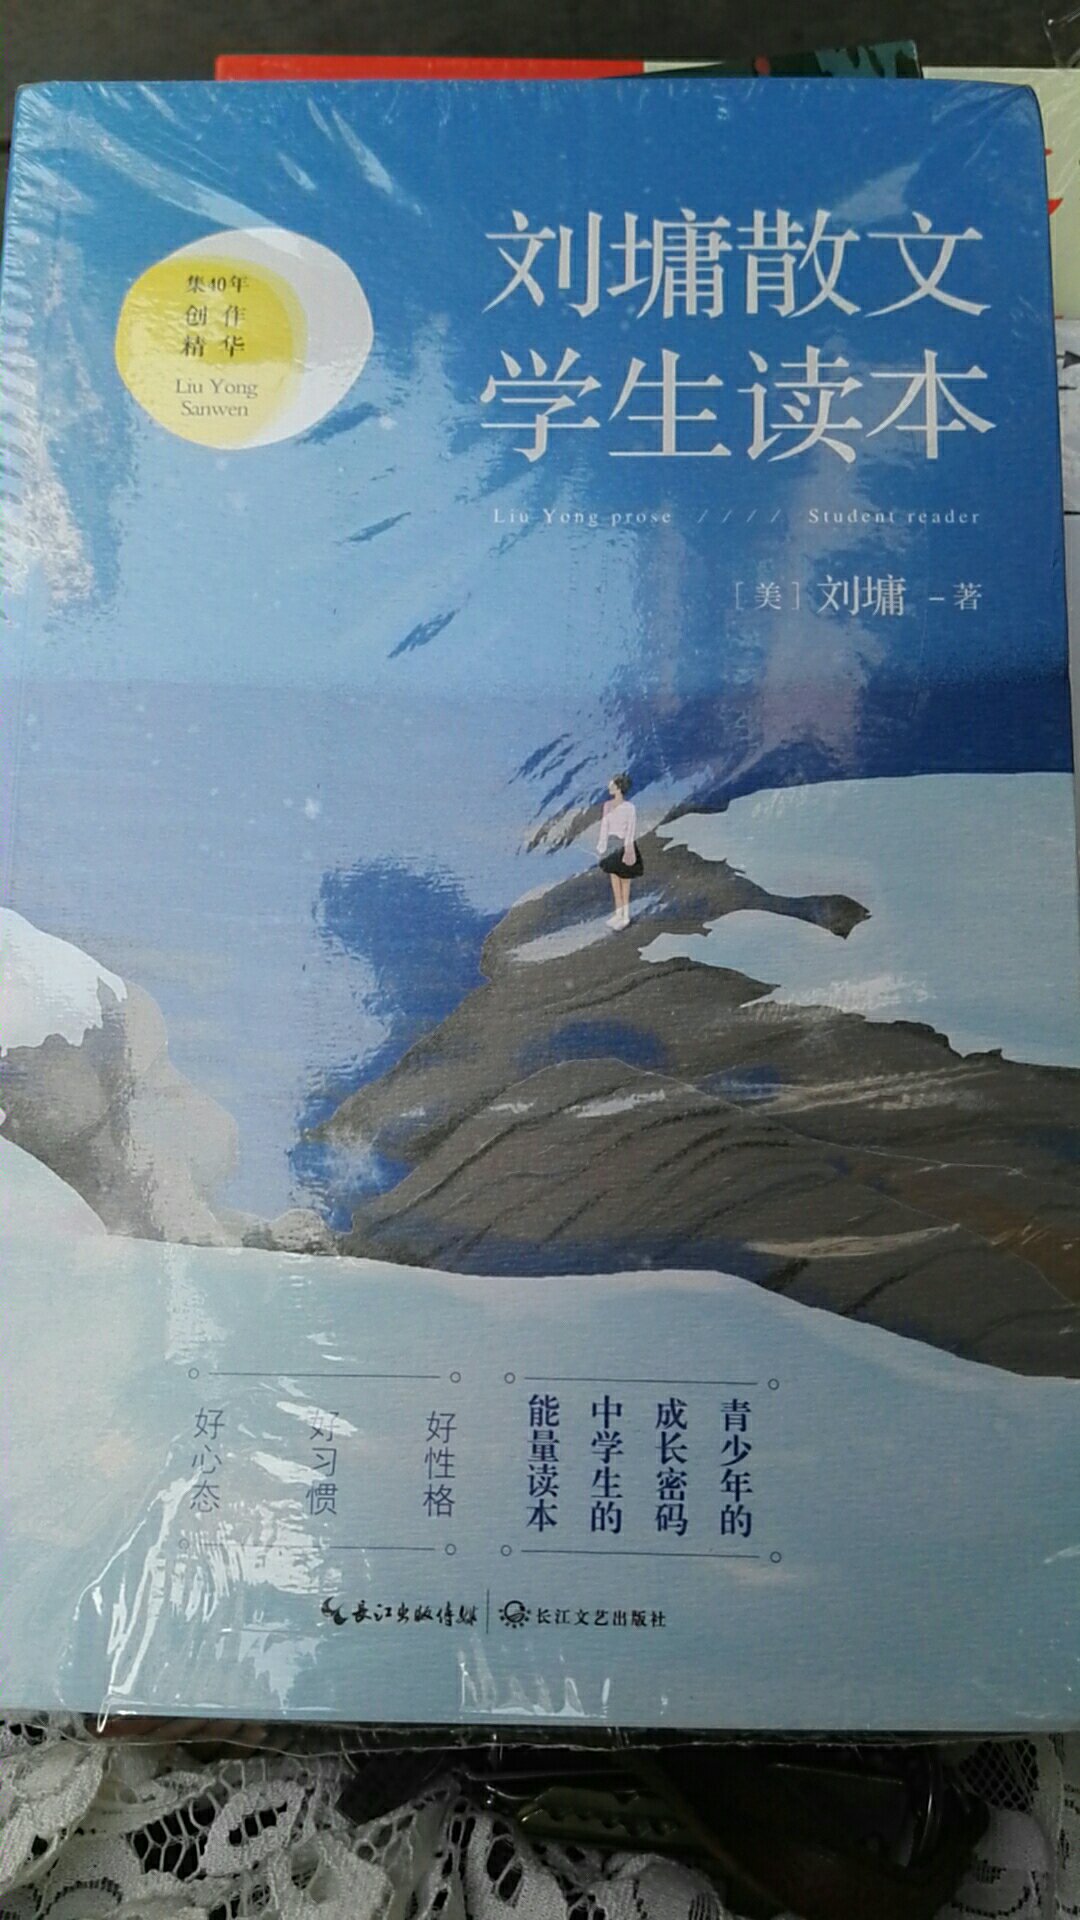 很喜欢刘墉老师的书，包装好、物流很快服务态度很好。